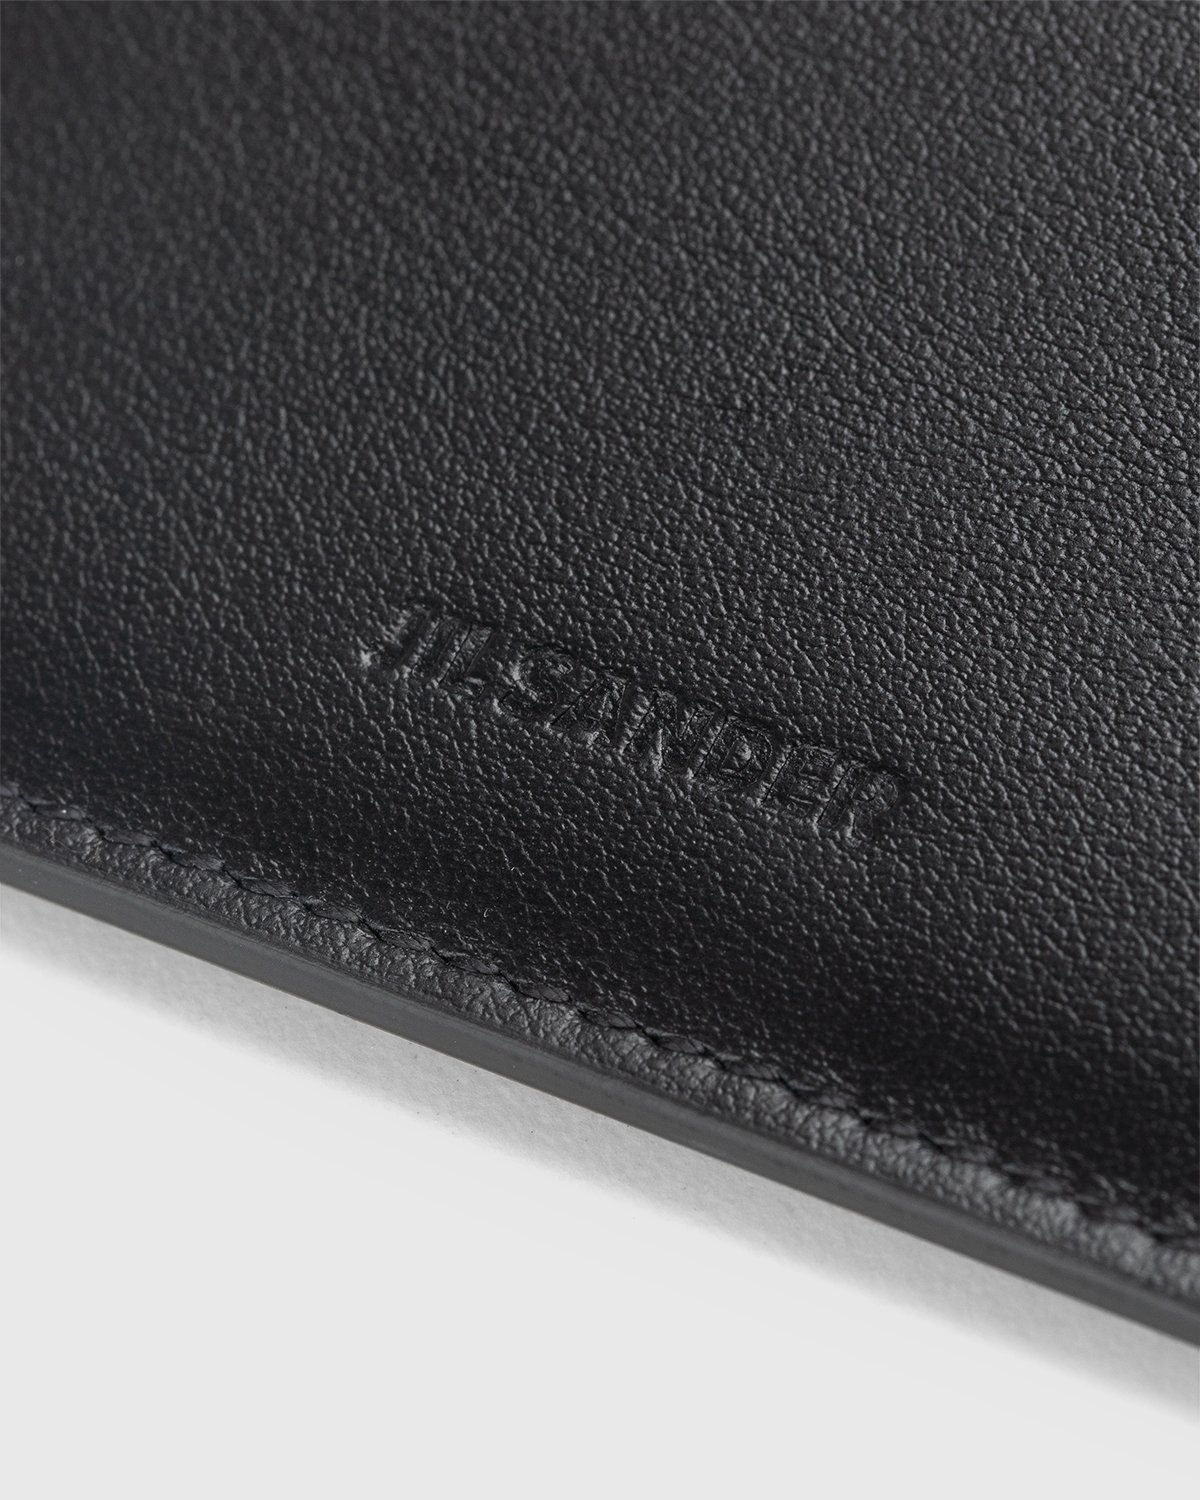 Jil Sander - Leather Card Holder Black - Accessories - Black - Image 4